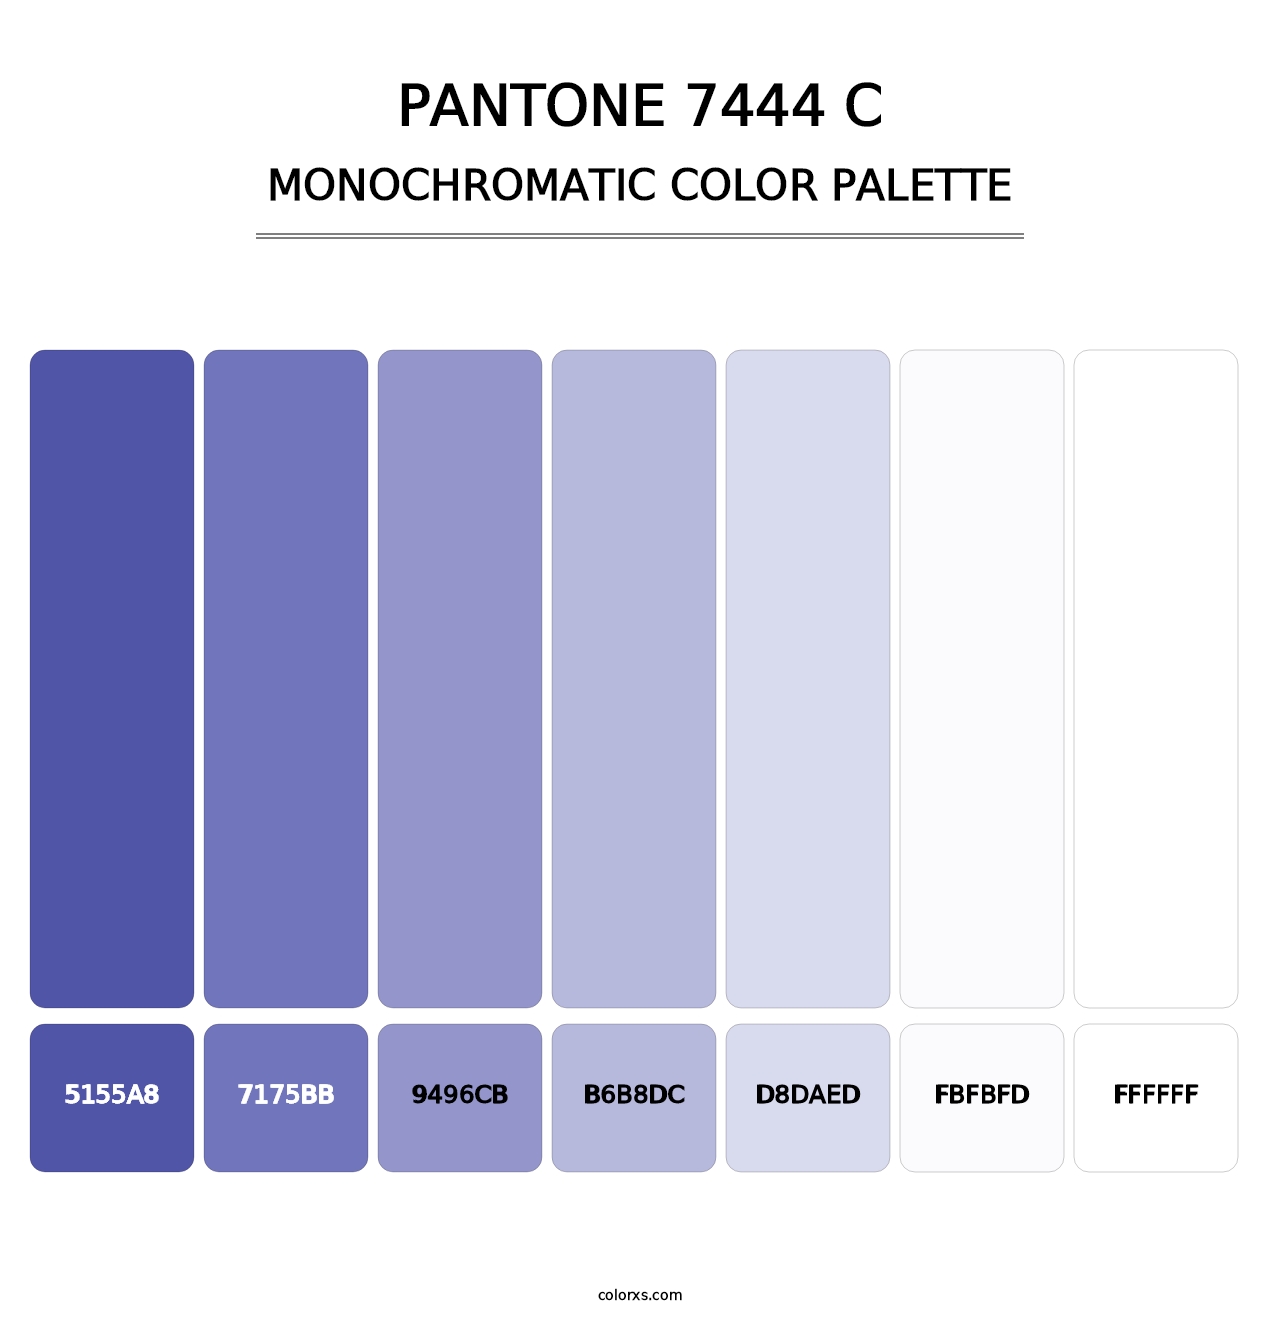 PANTONE 7444 C - Monochromatic Color Palette